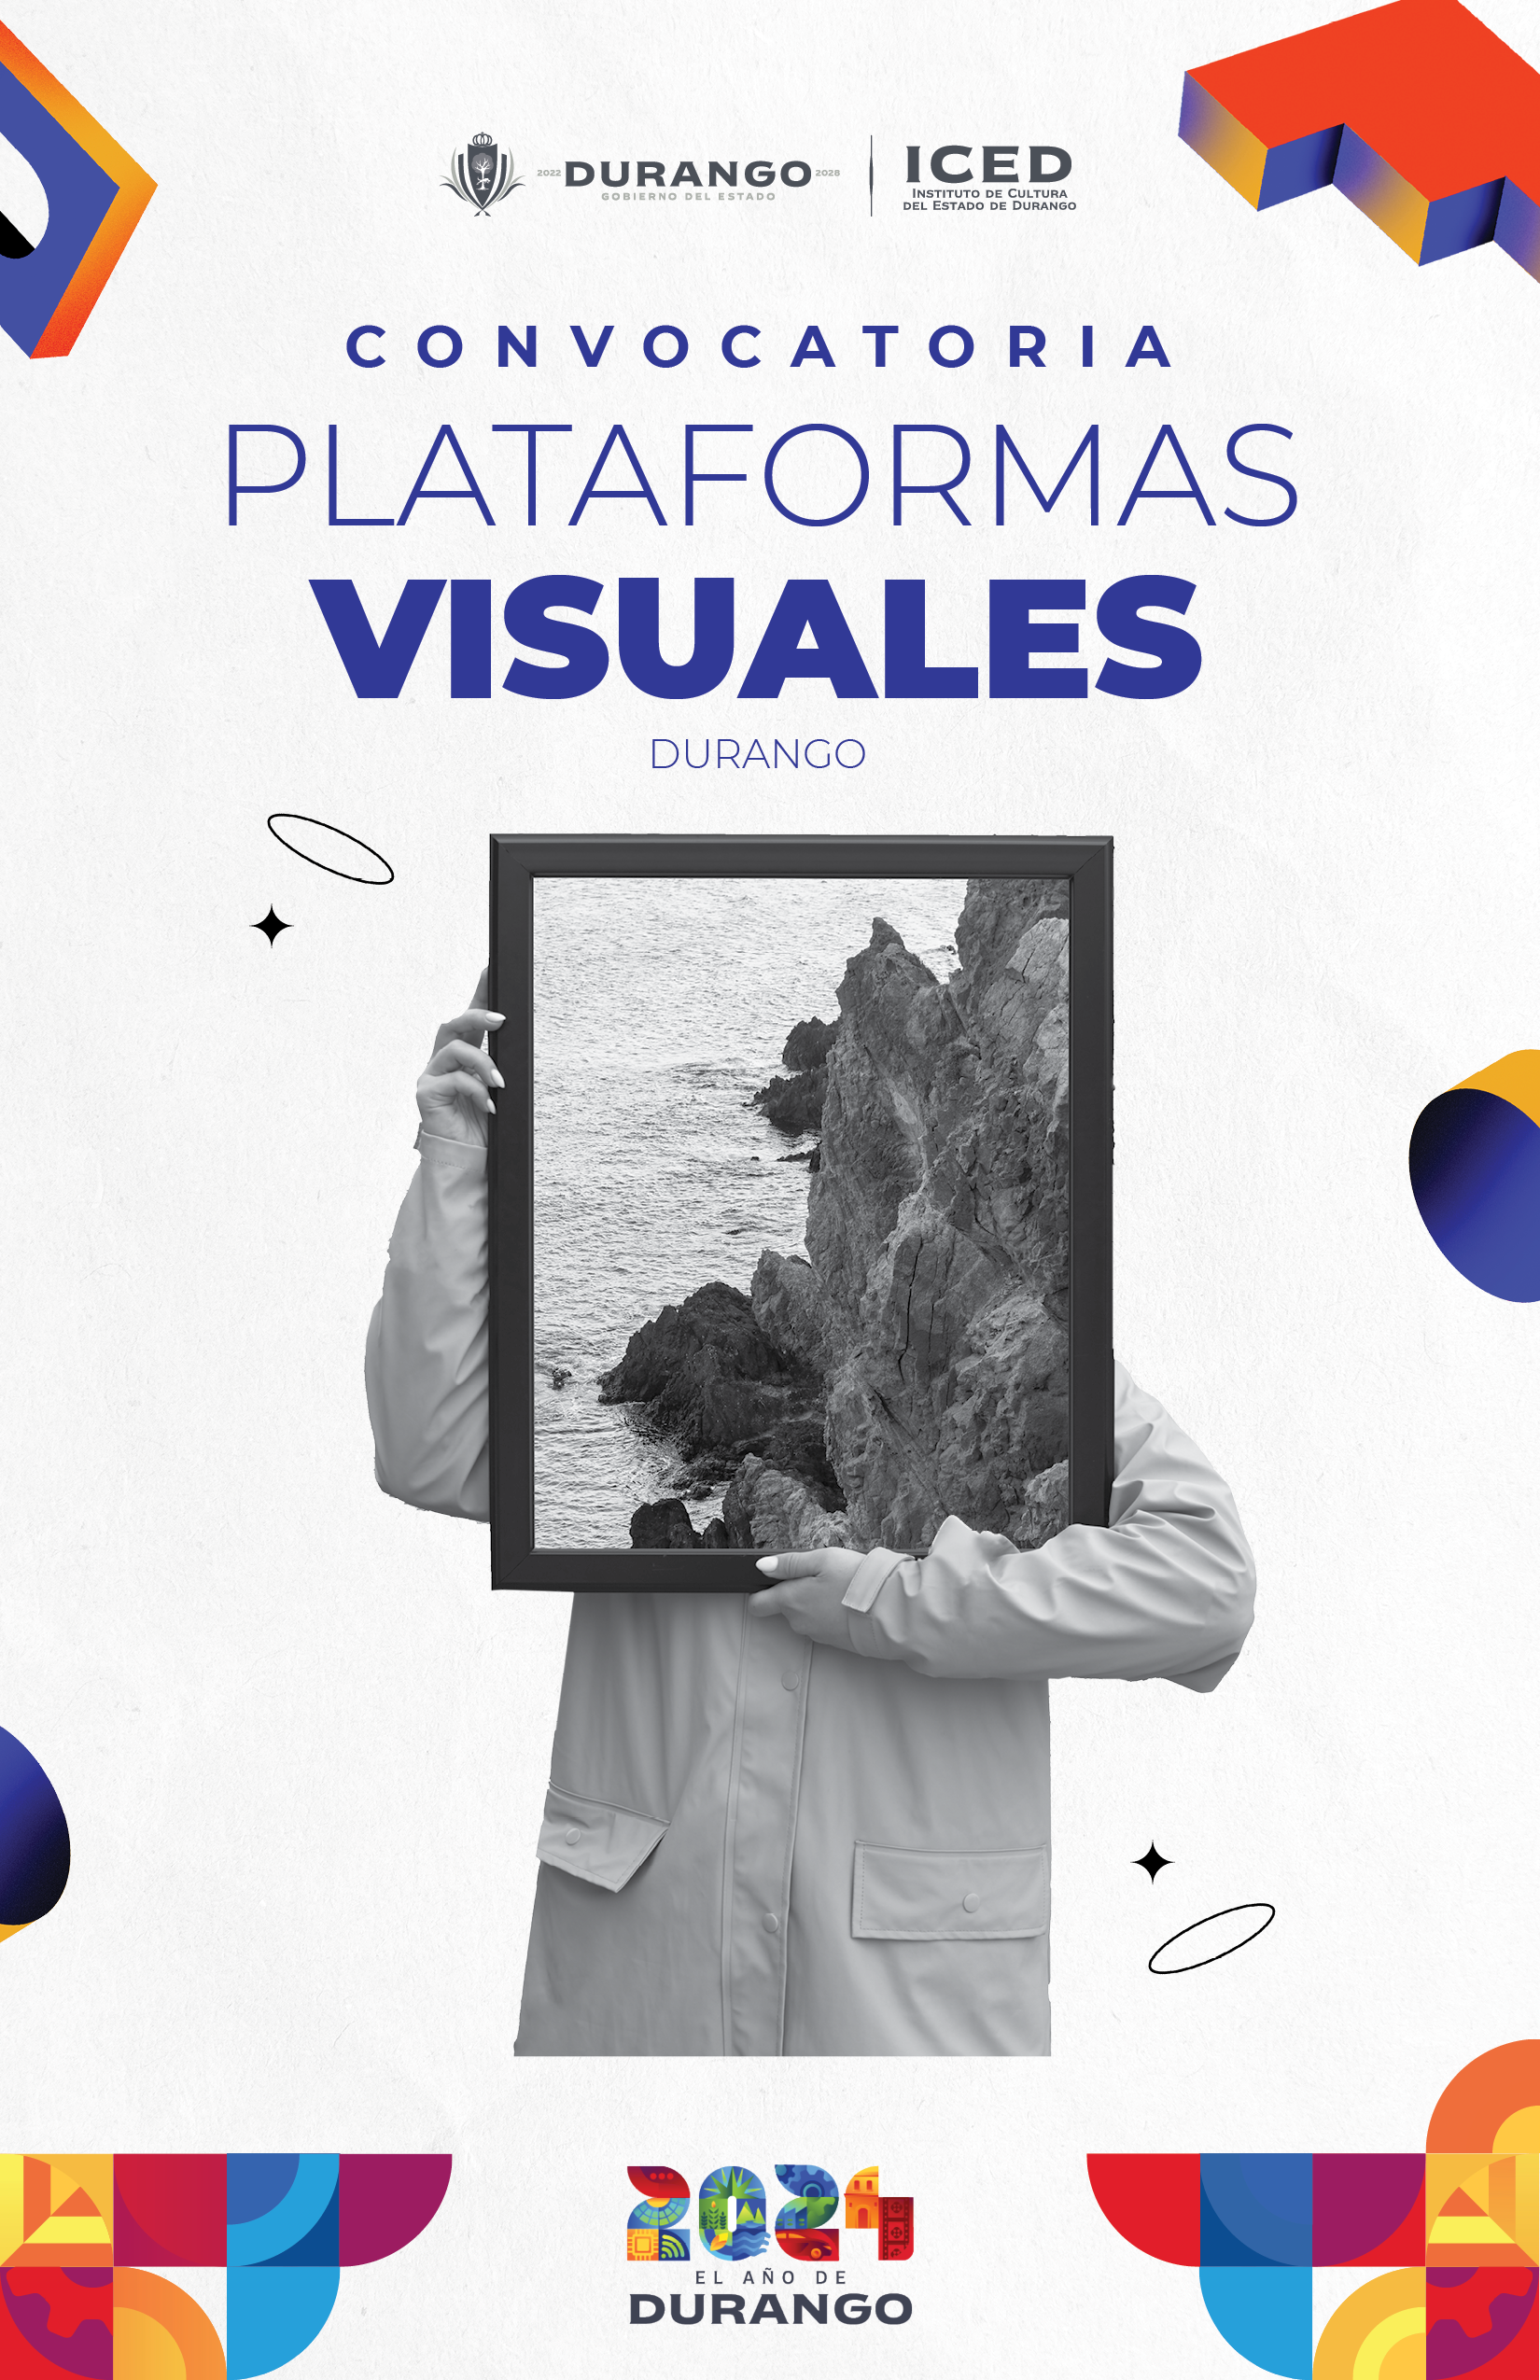 Se abre convocatoria “Plataforma Visuales Durango” para  Artes plásticas y visuales.